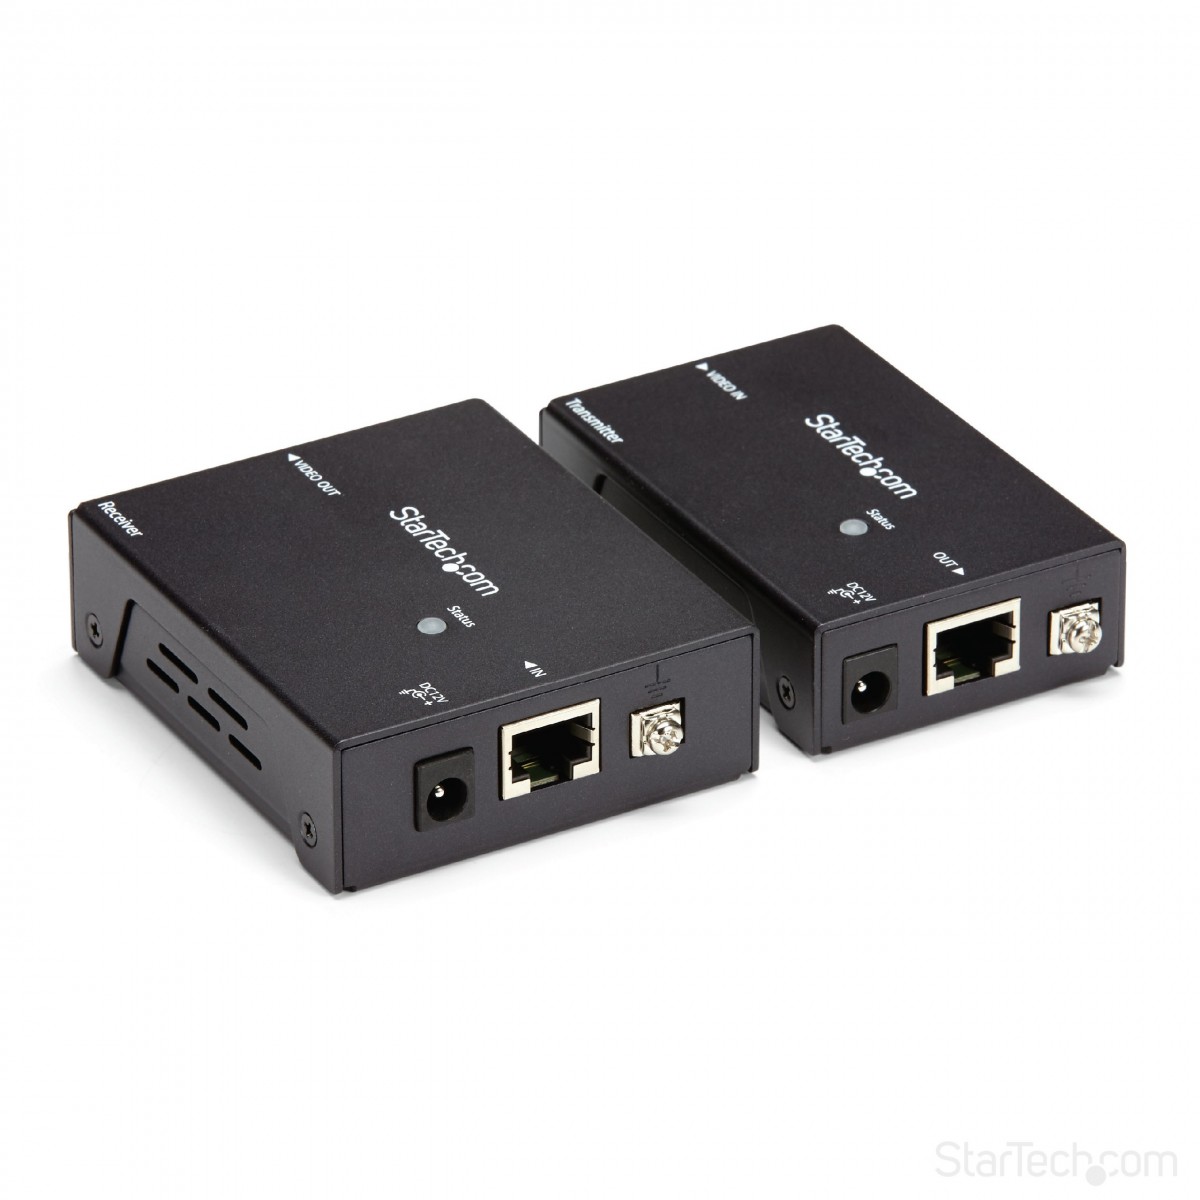 StarTech.com HDMI over CAT5 HDBaseT Extender - Power over Cable - Ultra HD 4K - 4096 x 2160 pixels - AV transmitter  receiver - 